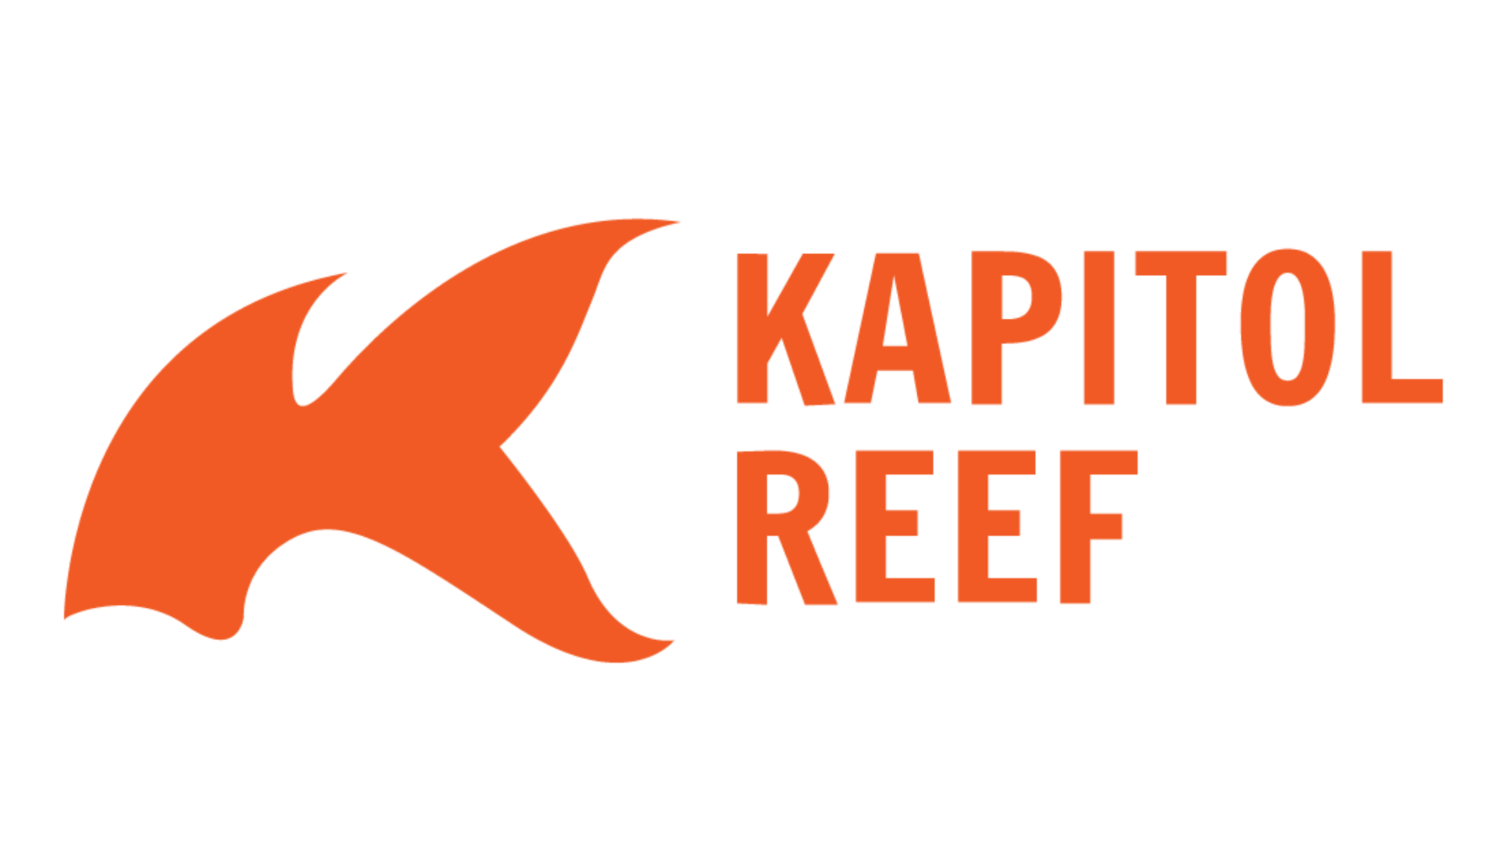 Kapitol Reef